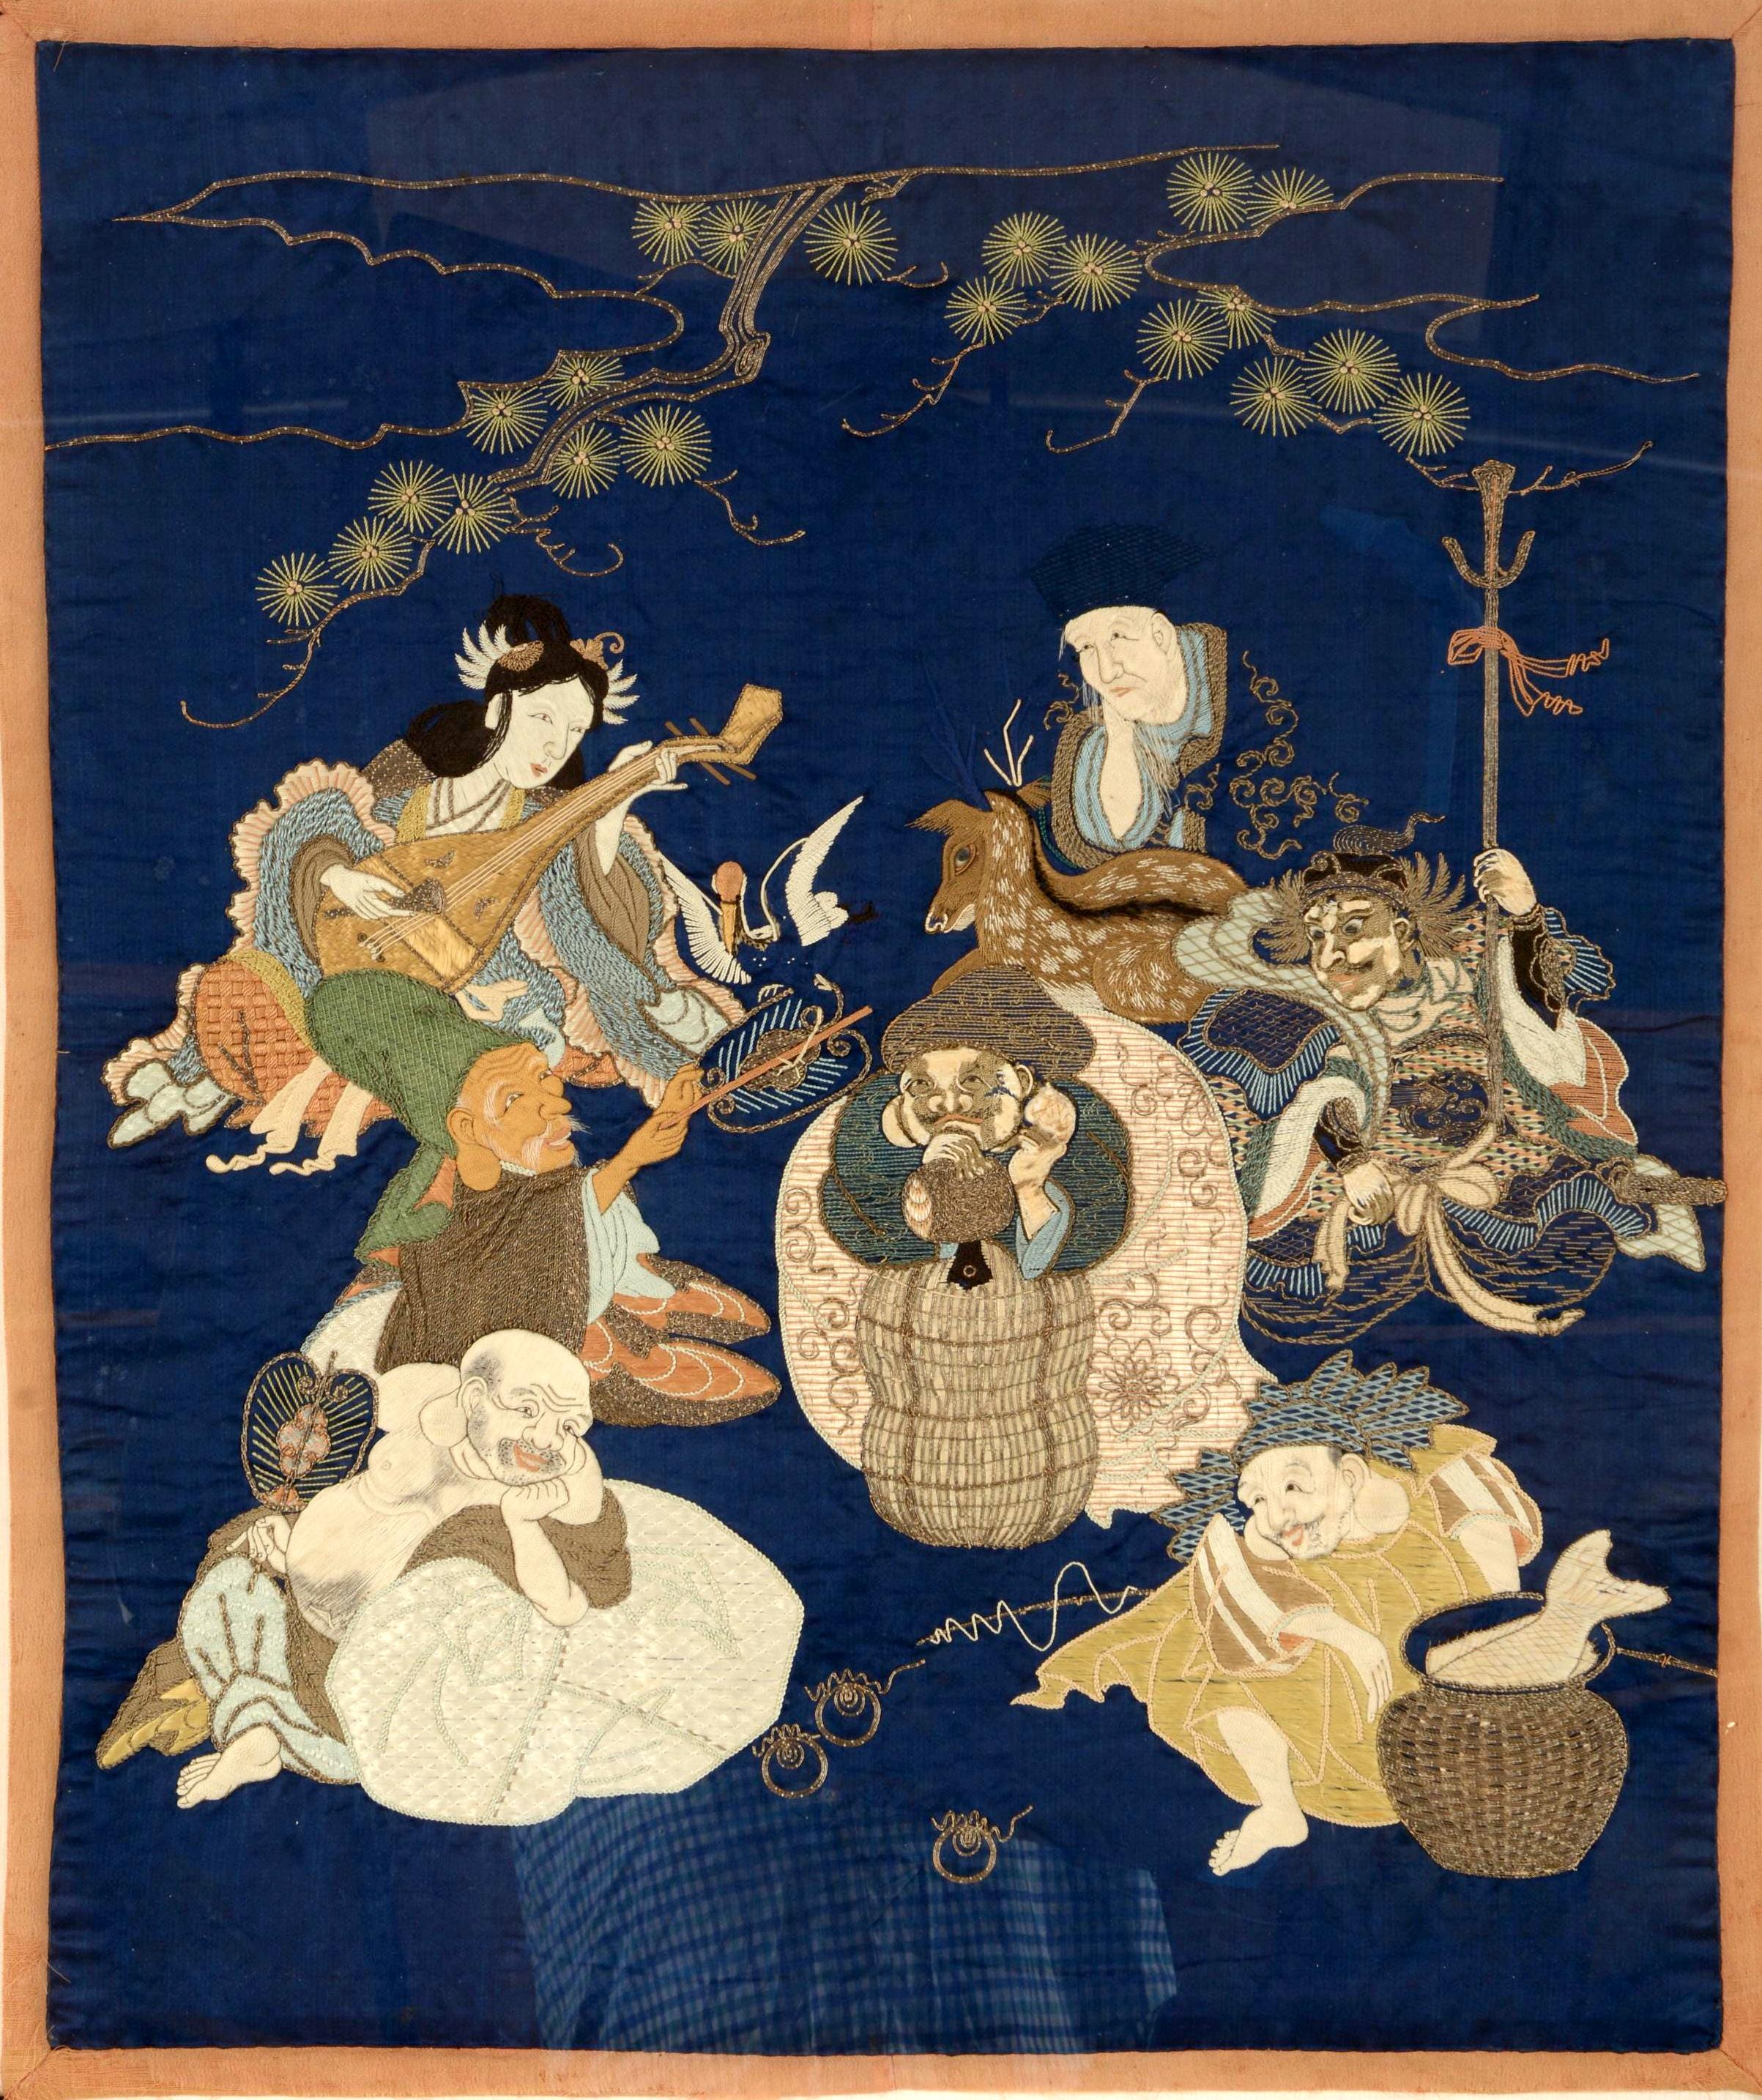 Panneau japonais Fukusa à glands présenté dans un cadre doré, vers la période Meiji. Le Fukusa est un art textile traditionnel japonais utilisé comme emballage pour présenter des cadeaux lors d'occasions importantes. Sur le fond bleu profond, le